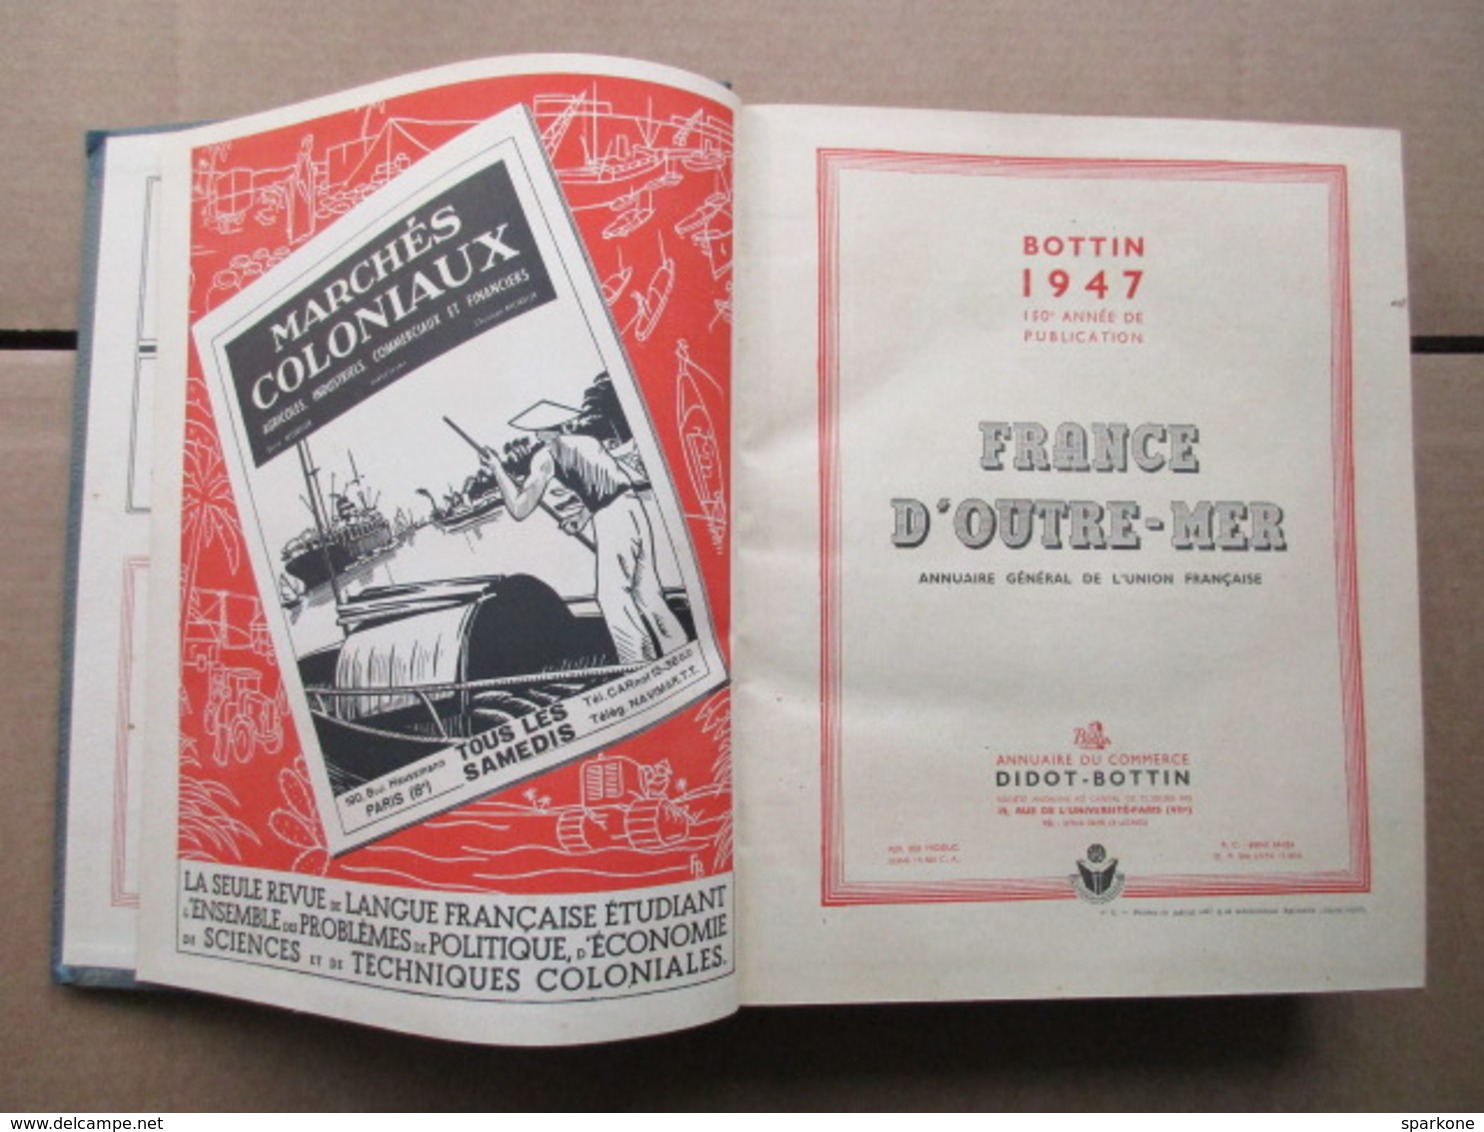 Annuaire Du Commerce / Didot-Bottin / France D'Outre-Mer De 1947 - Annuaires Téléphoniques